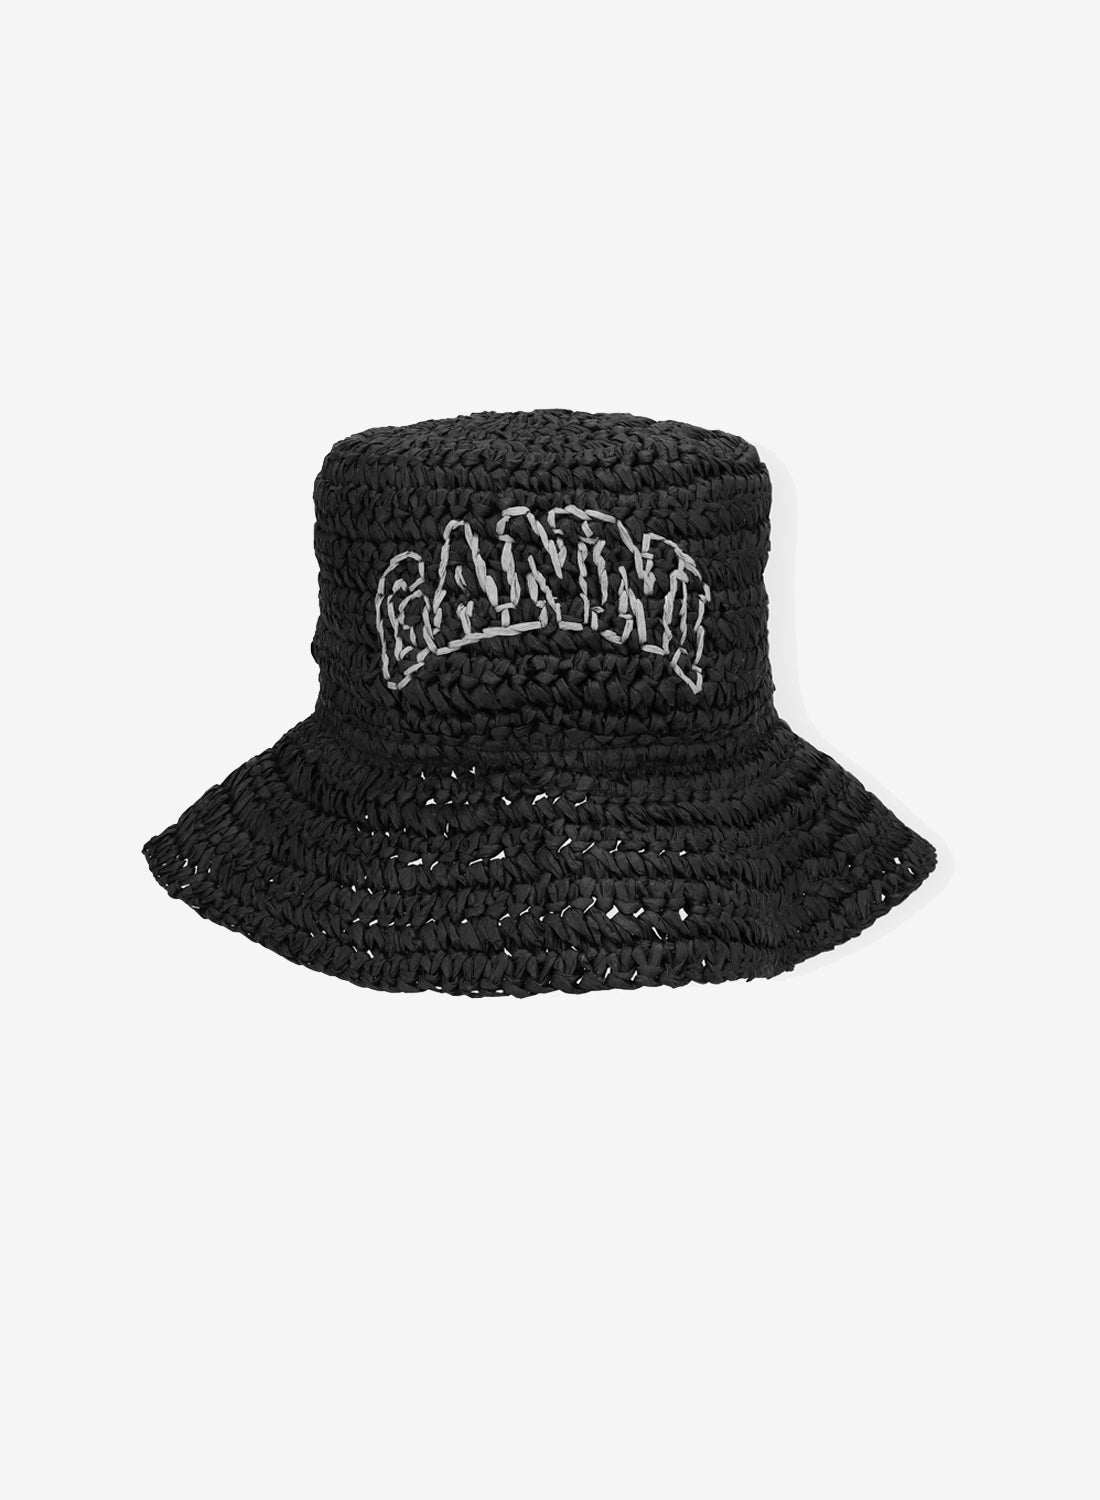 Ganni Summer Straw Hat Black